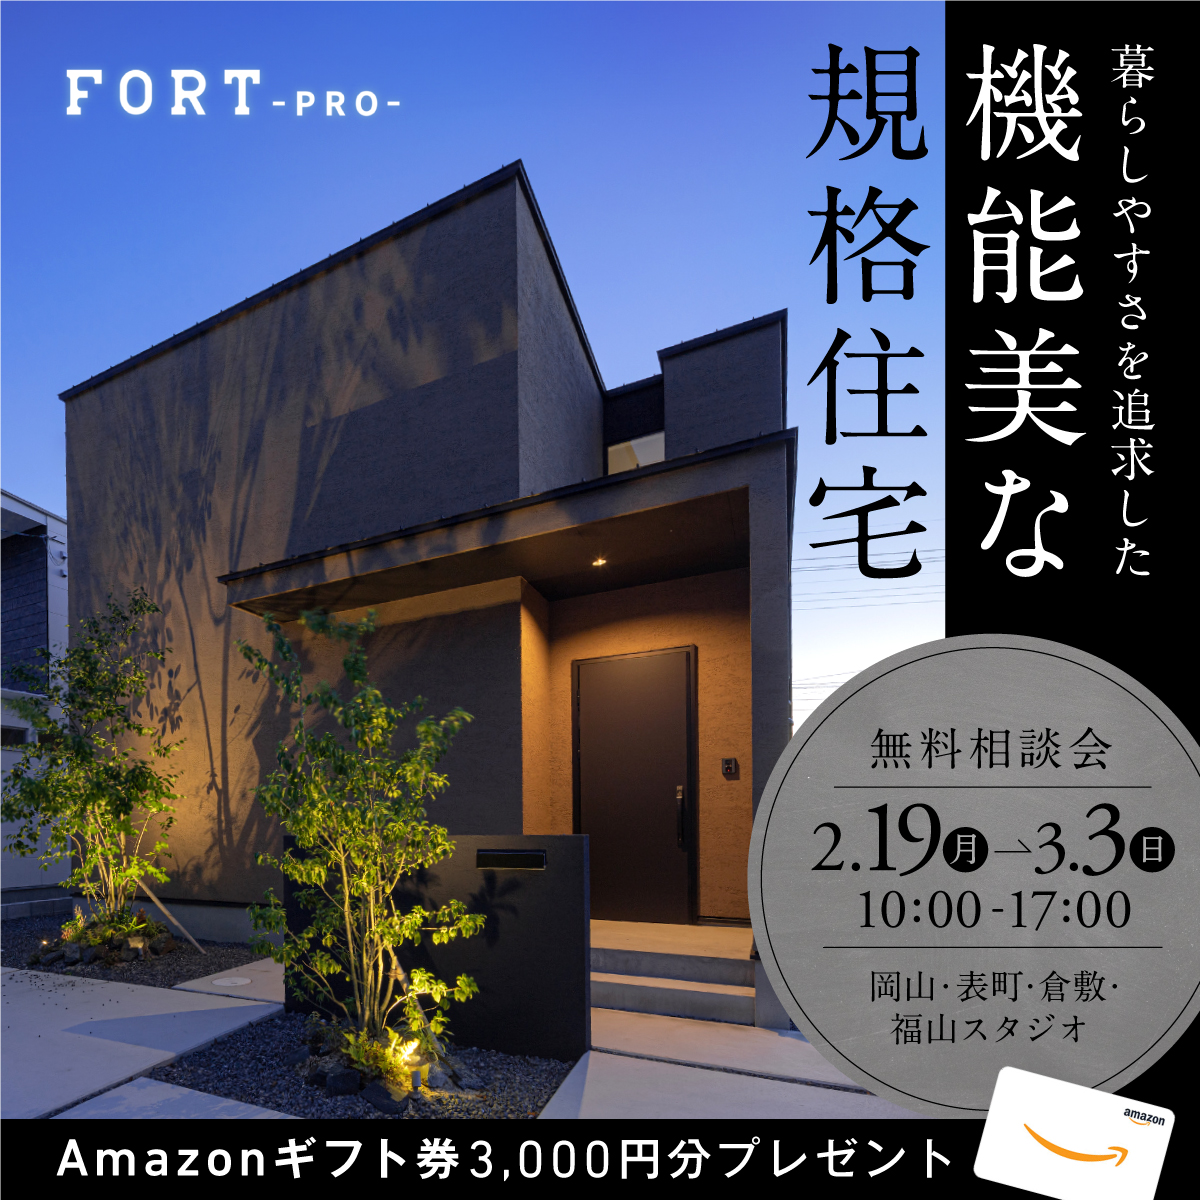 暮らしやすさを追求した機能美な規格住宅『FORT-PRO』